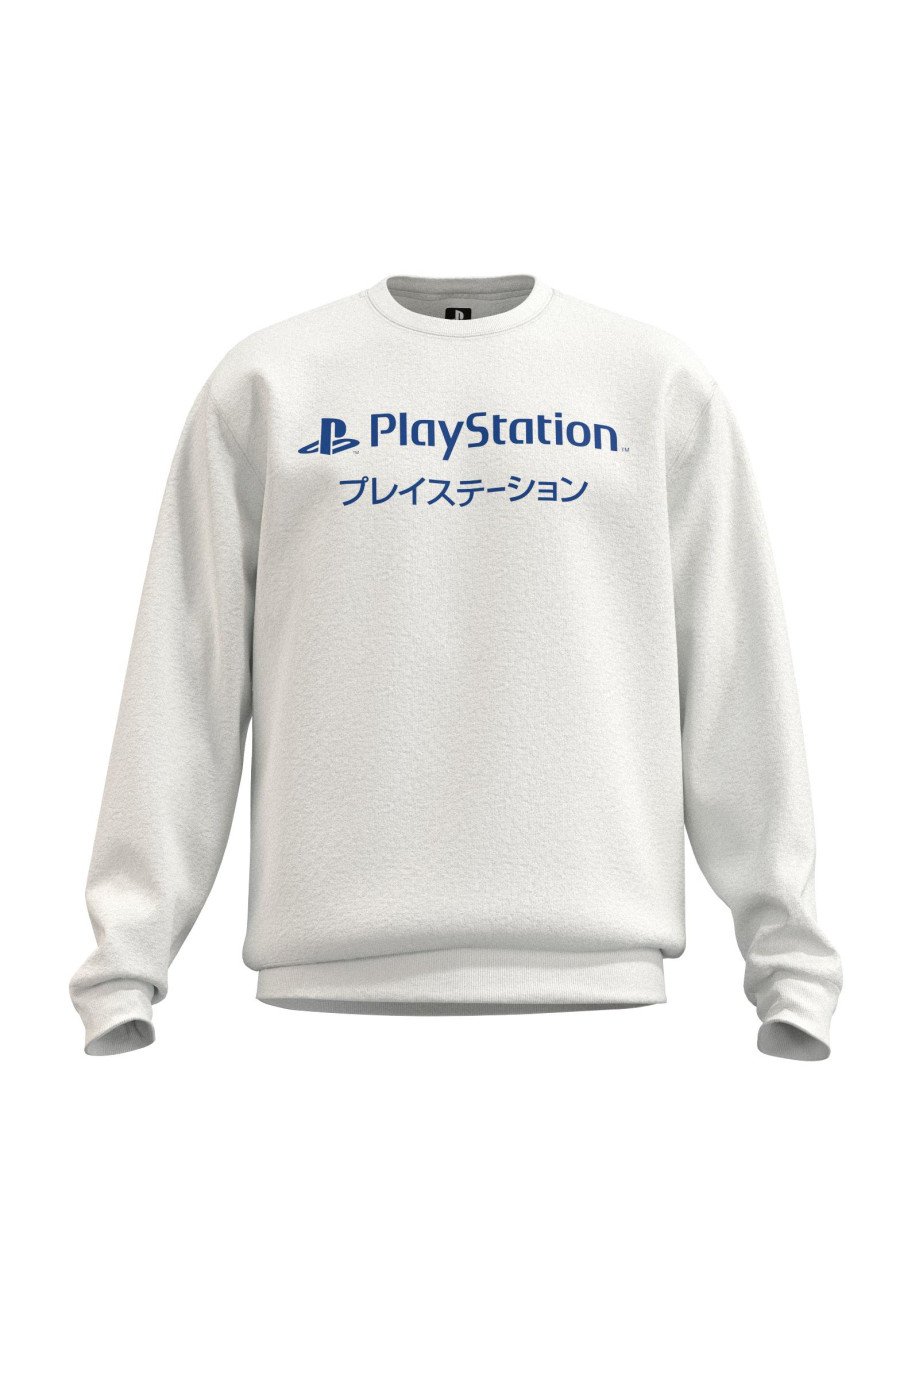 Buzo unicolor con diseño de PlayStation y cuello redondo